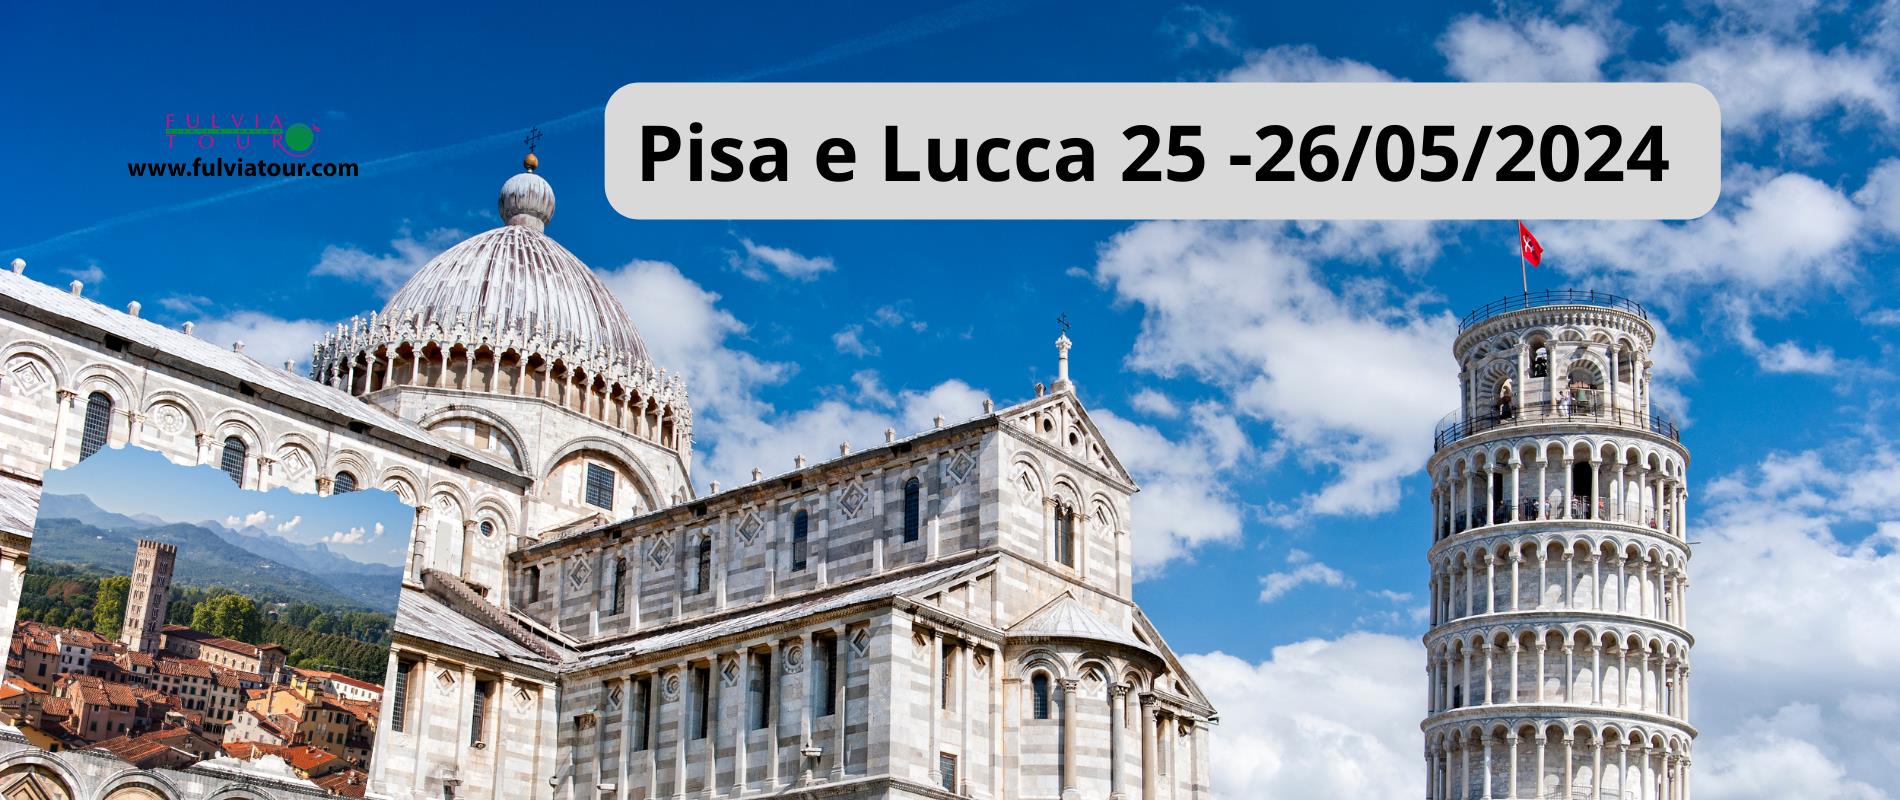 Tour Pisa e Lucca 